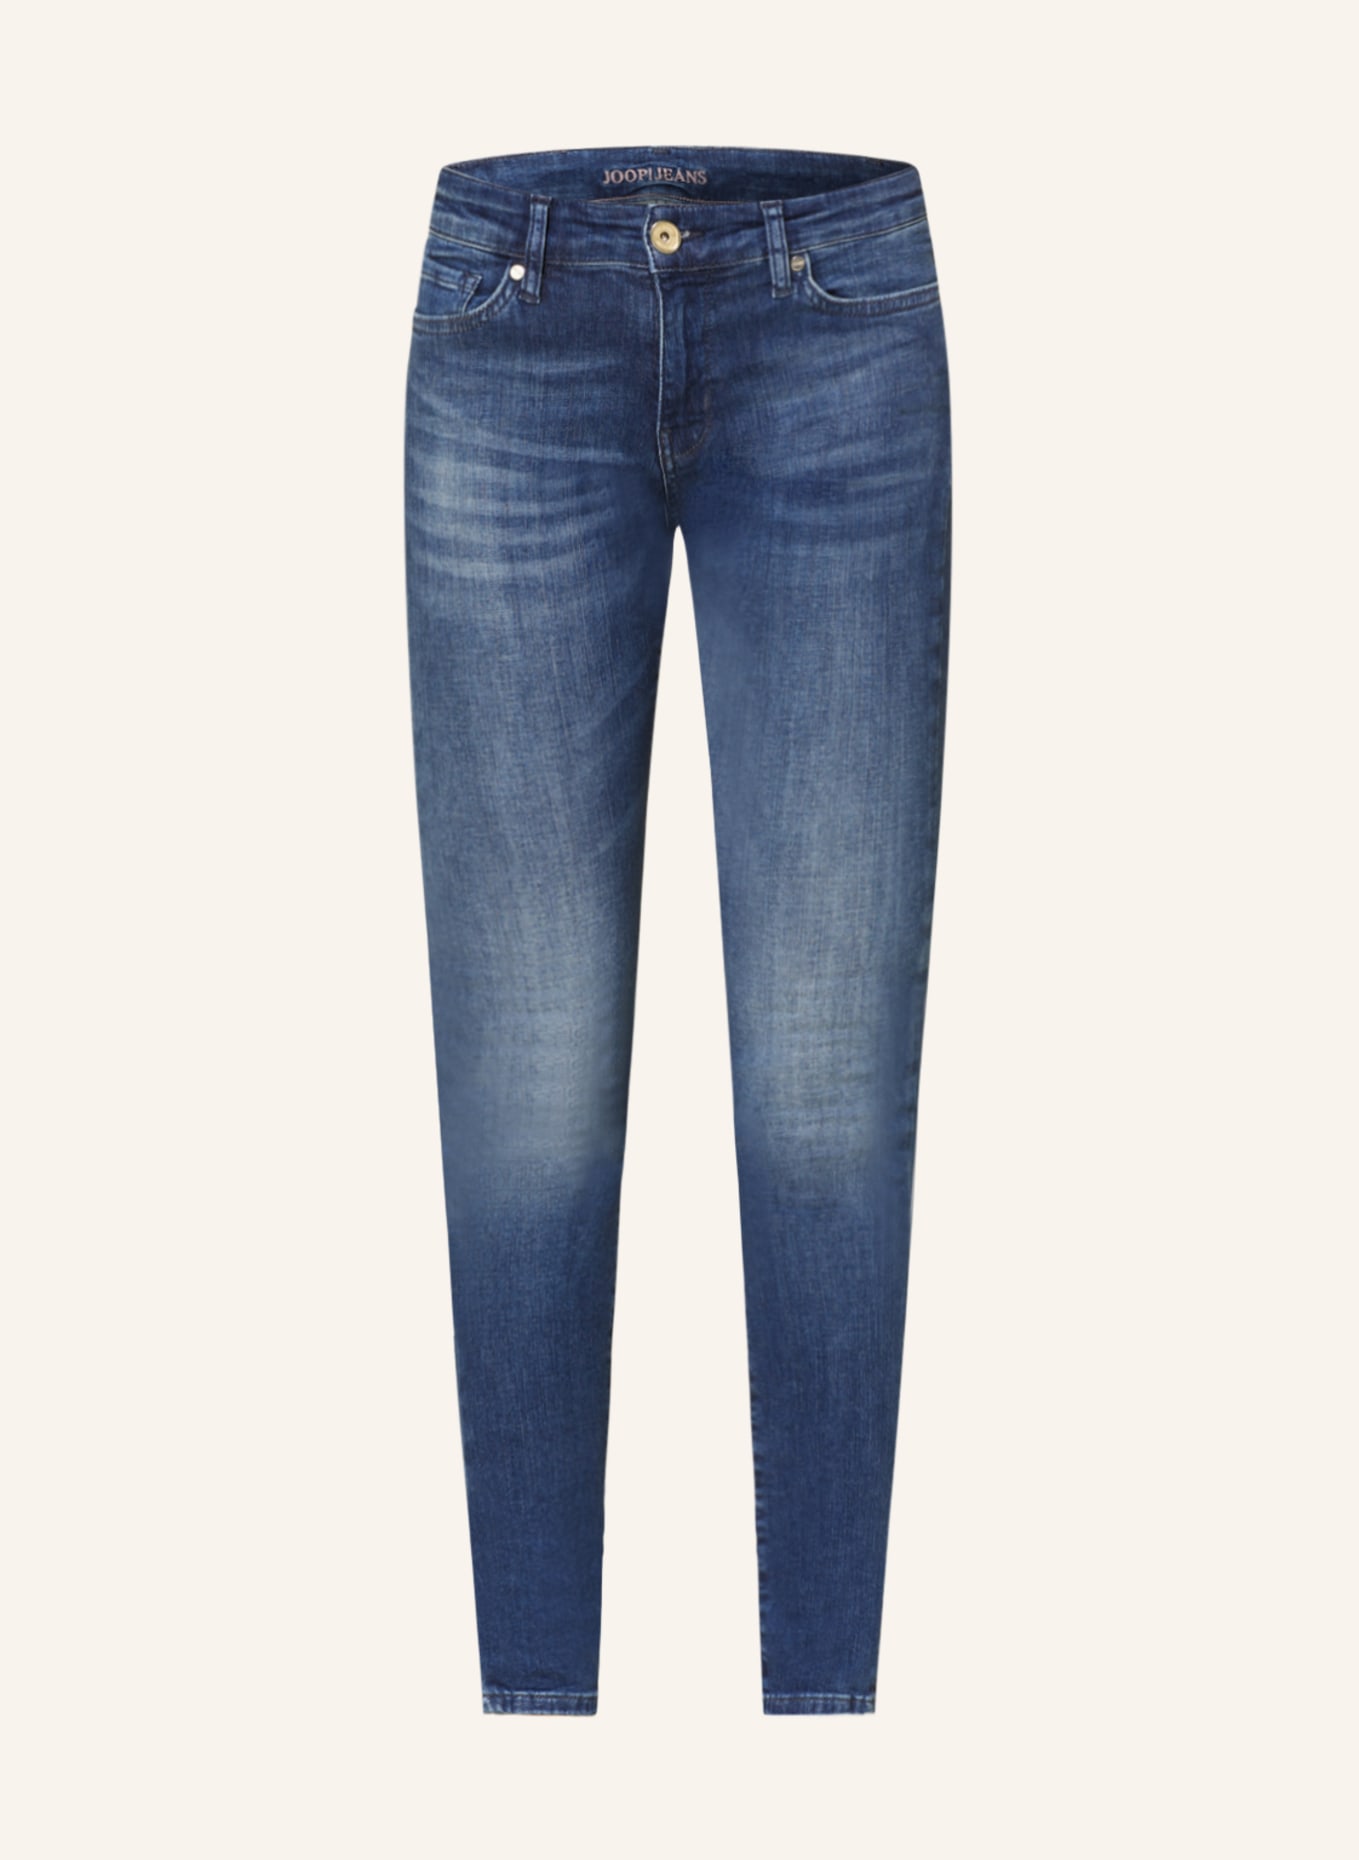 JOOP! Skinny jeans blue 425 in 425 medium